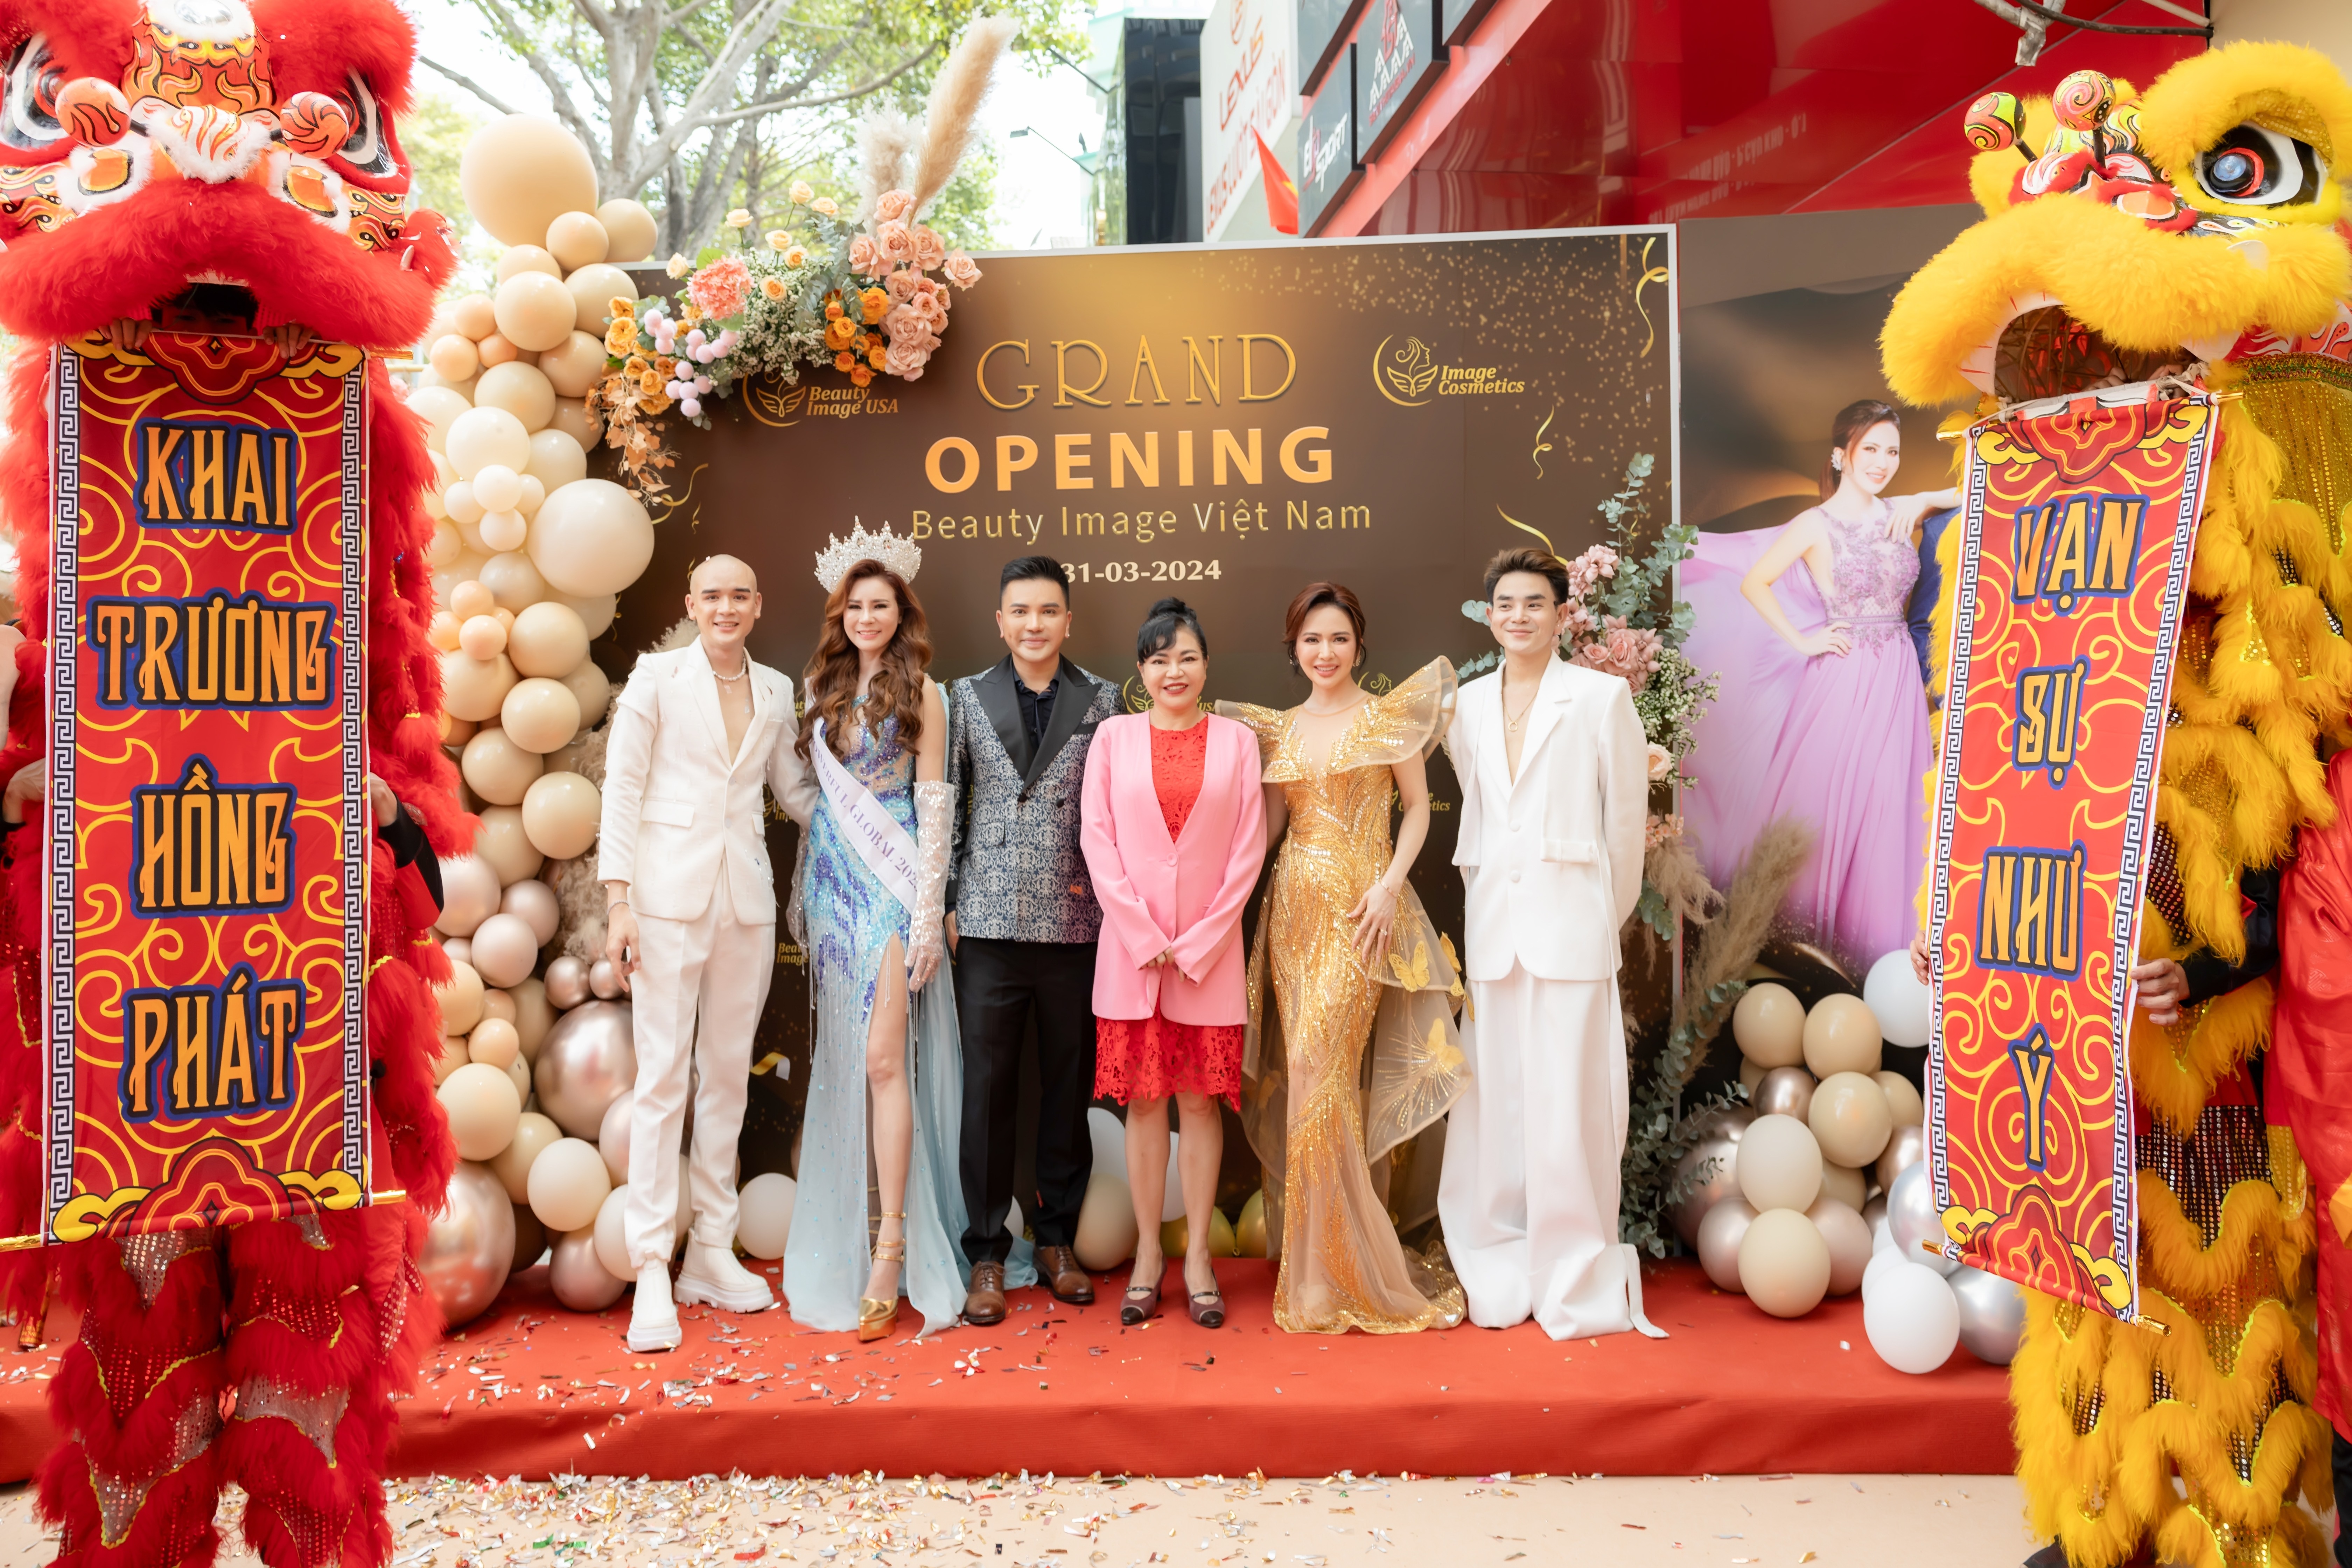 Đại sứ thương hiệu Beauty Image năm 2024 với bà Jolie Phương Đào (thứ 2 từ trái qua) - Hoa hậu quyền năng toàn cầu Canada năm 2023 tại sự kiện.